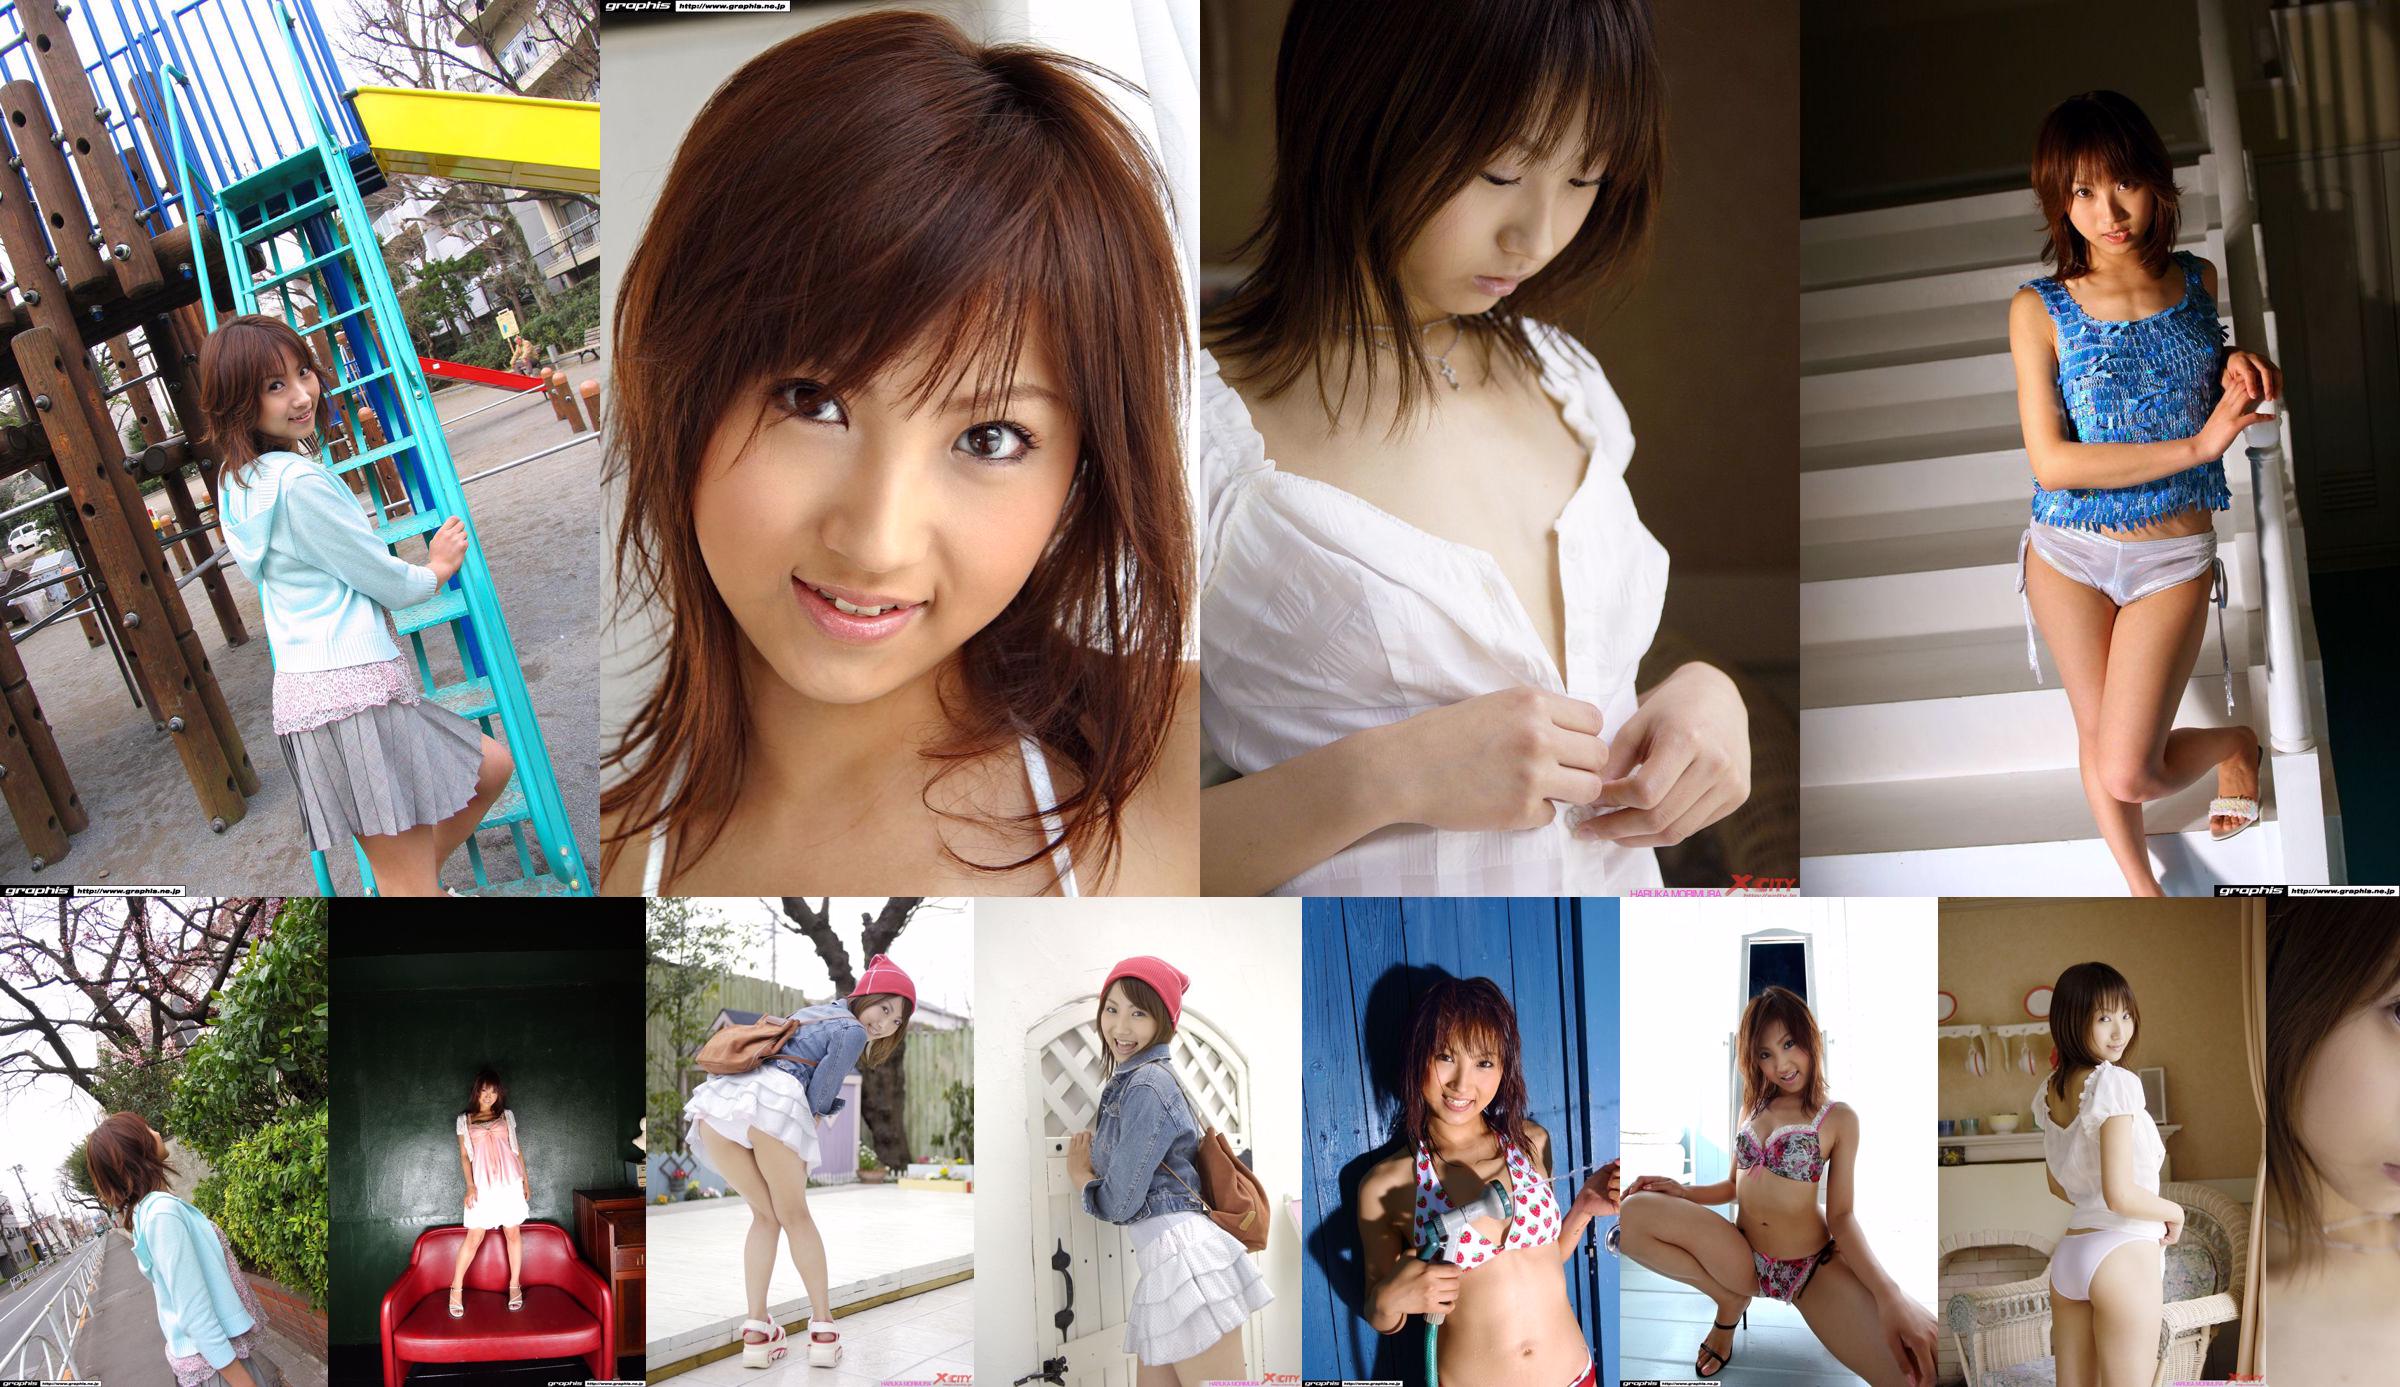 [X-City] WEB No.012 Haruka Morimura / Morimura Haruka "Morning Girl" No.759fad Trang 8